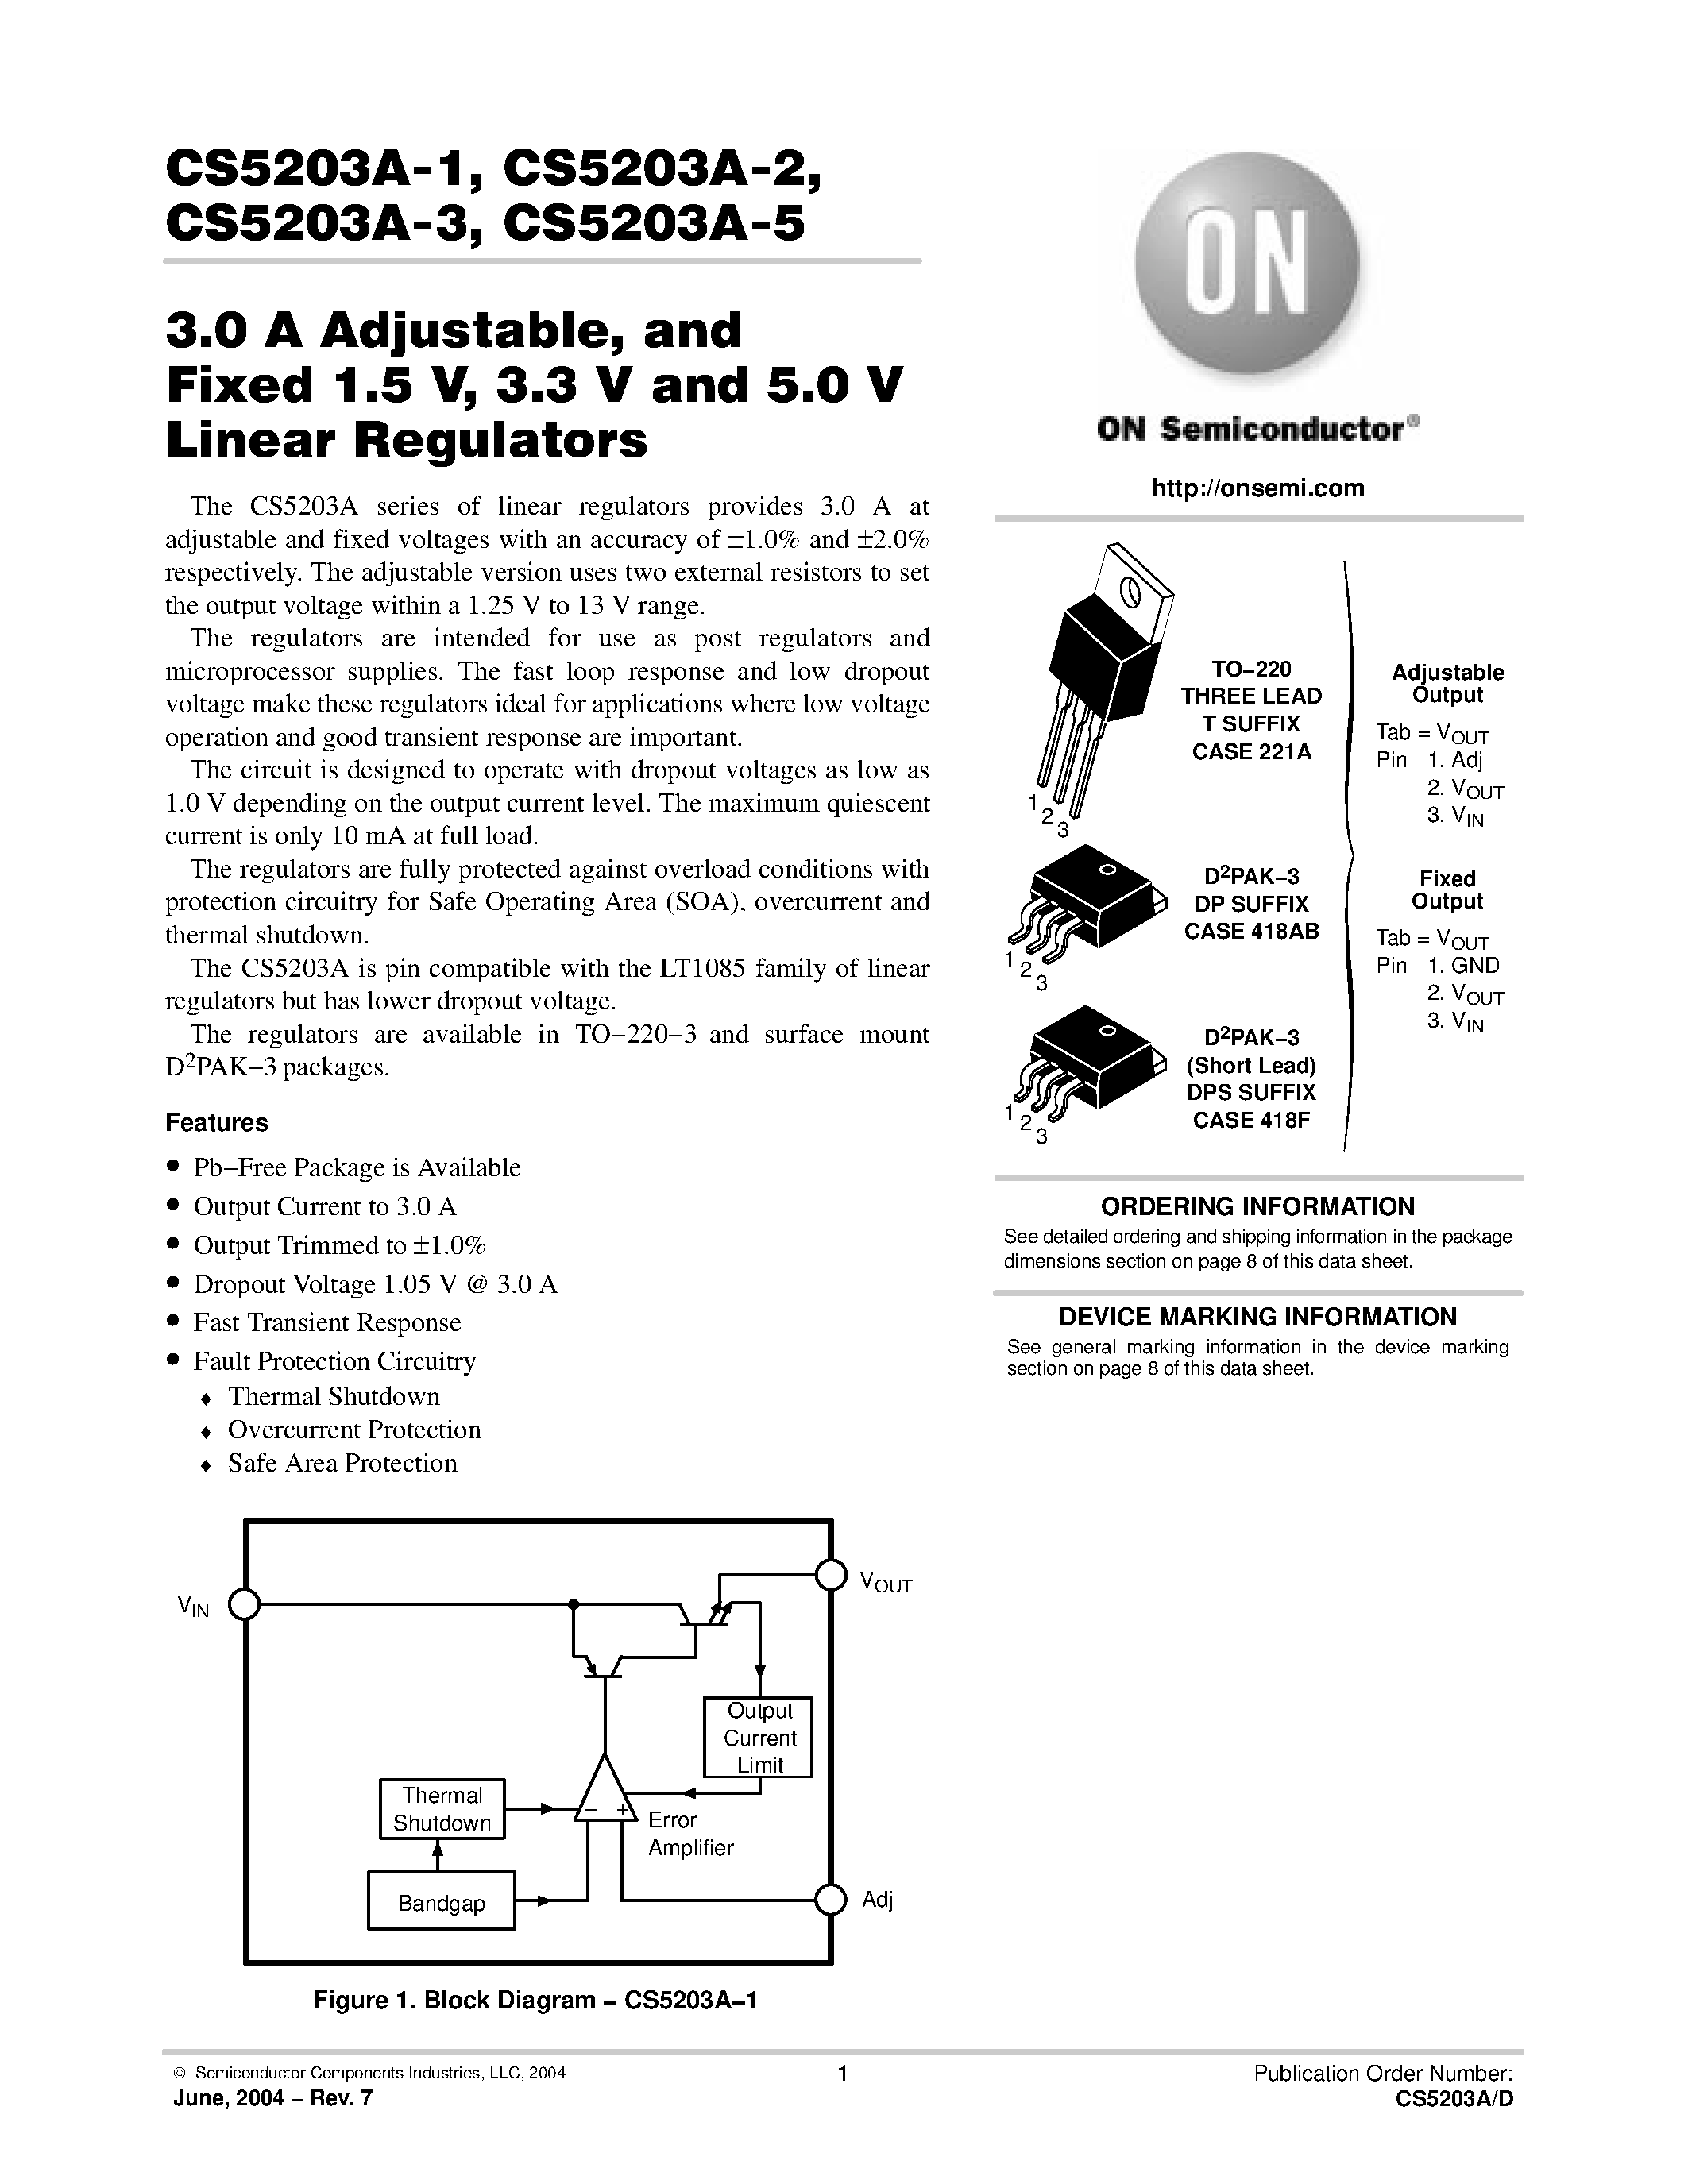 Даташит CS5203A-3-3.0 A Adjustable/ and Fixed 1.5 V/ 3.3 V and 5.0 V Linear Regulators страница 1